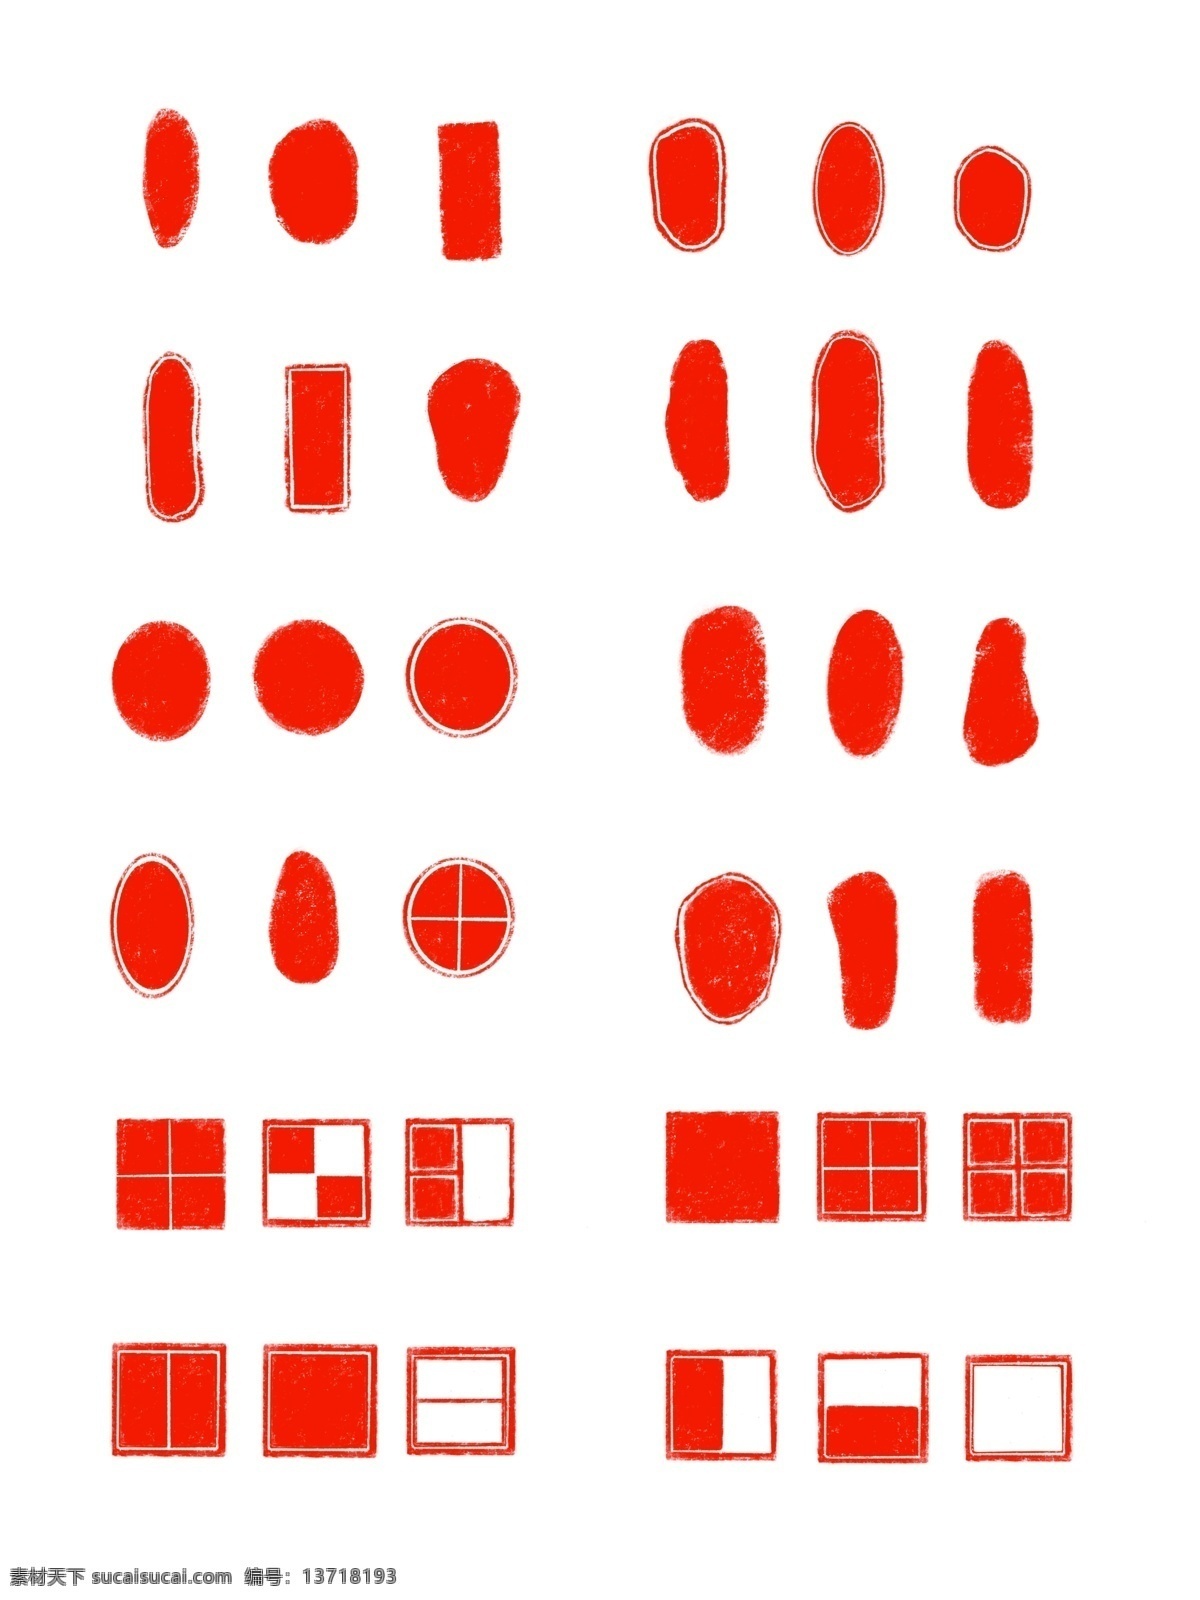 印章 套 图 中国 红色 红色印章 印 书法印章 书画印章 油印 红印 印章元素